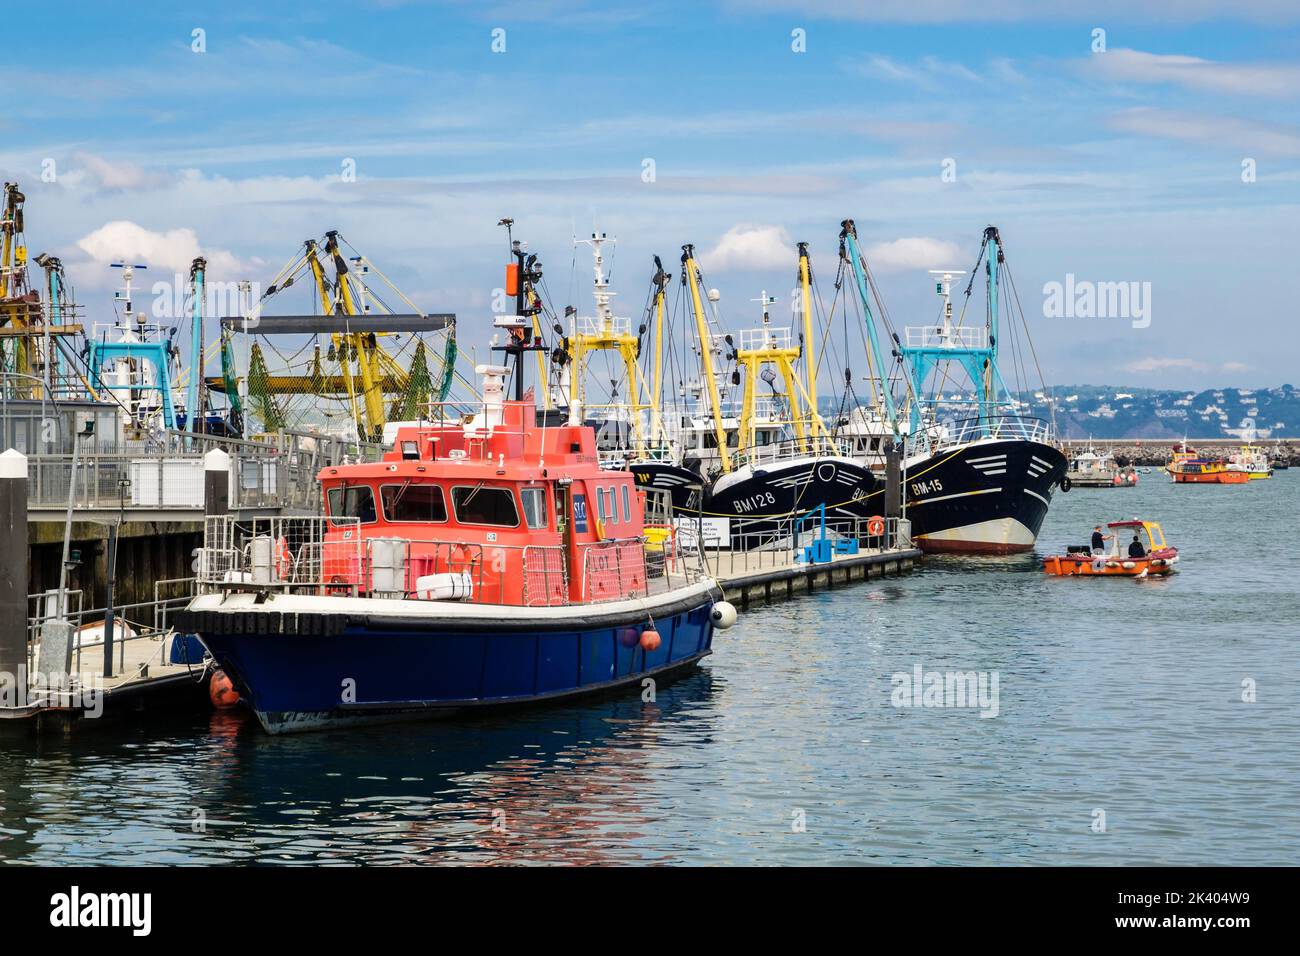 Bateau-pilote et flotte de pêche commerciale dans le port extérieur. Brixham, Devon, Angleterre, Royaume-Uni, Grande-Bretagne Banque D'Images